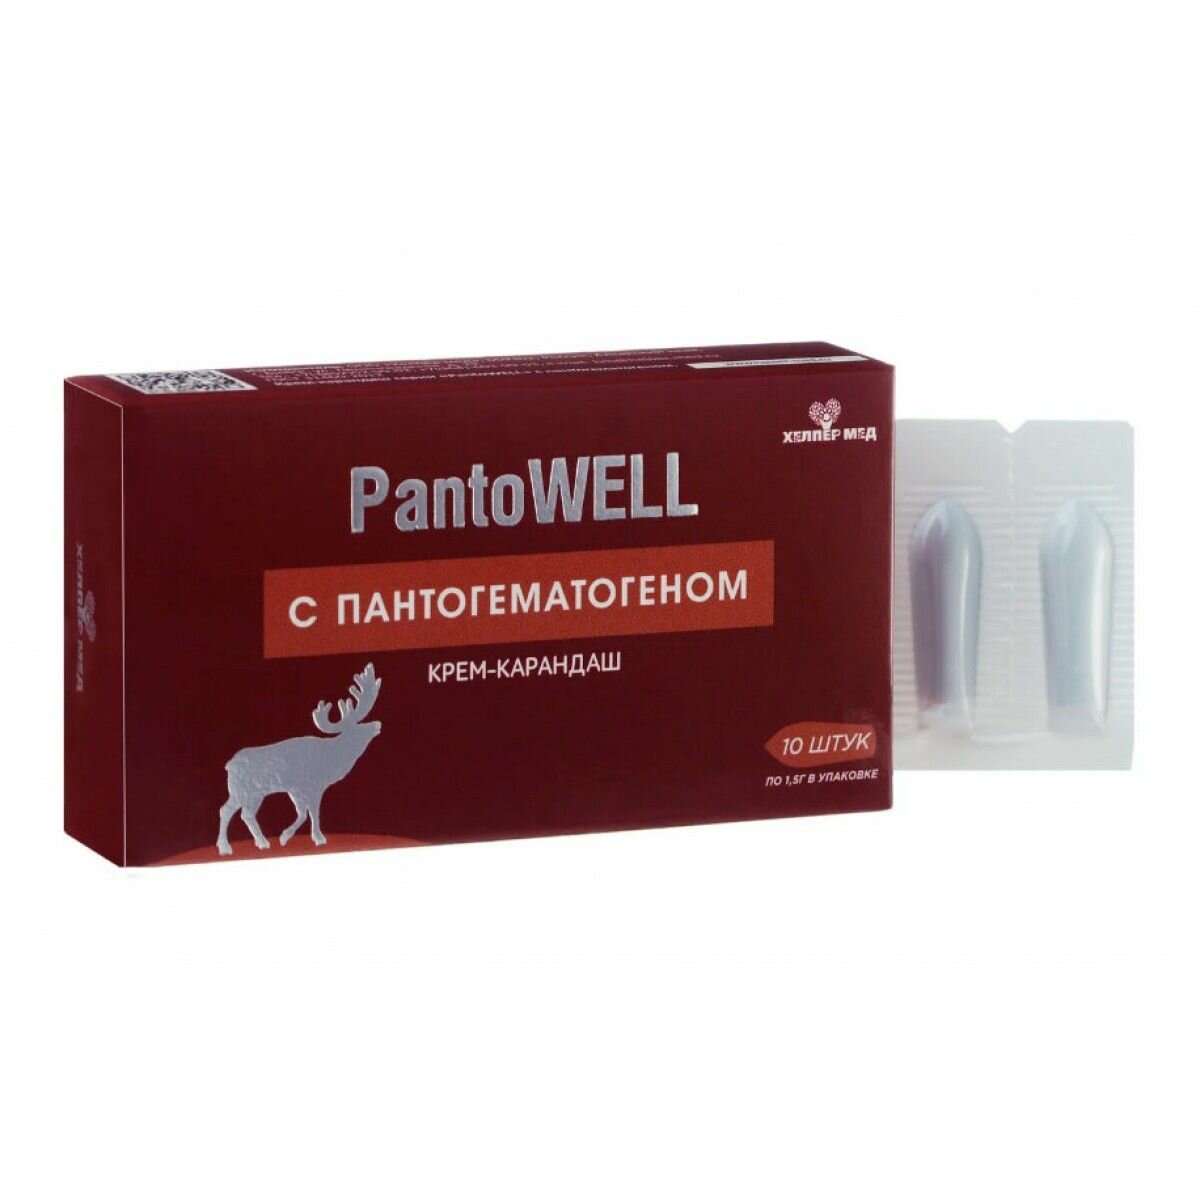 Свечи PantoWELL с пантогематогеном, 10 шт. Суппозитории Пантовел при геморрое, простатите, цистите, аденоме простаты, вагините